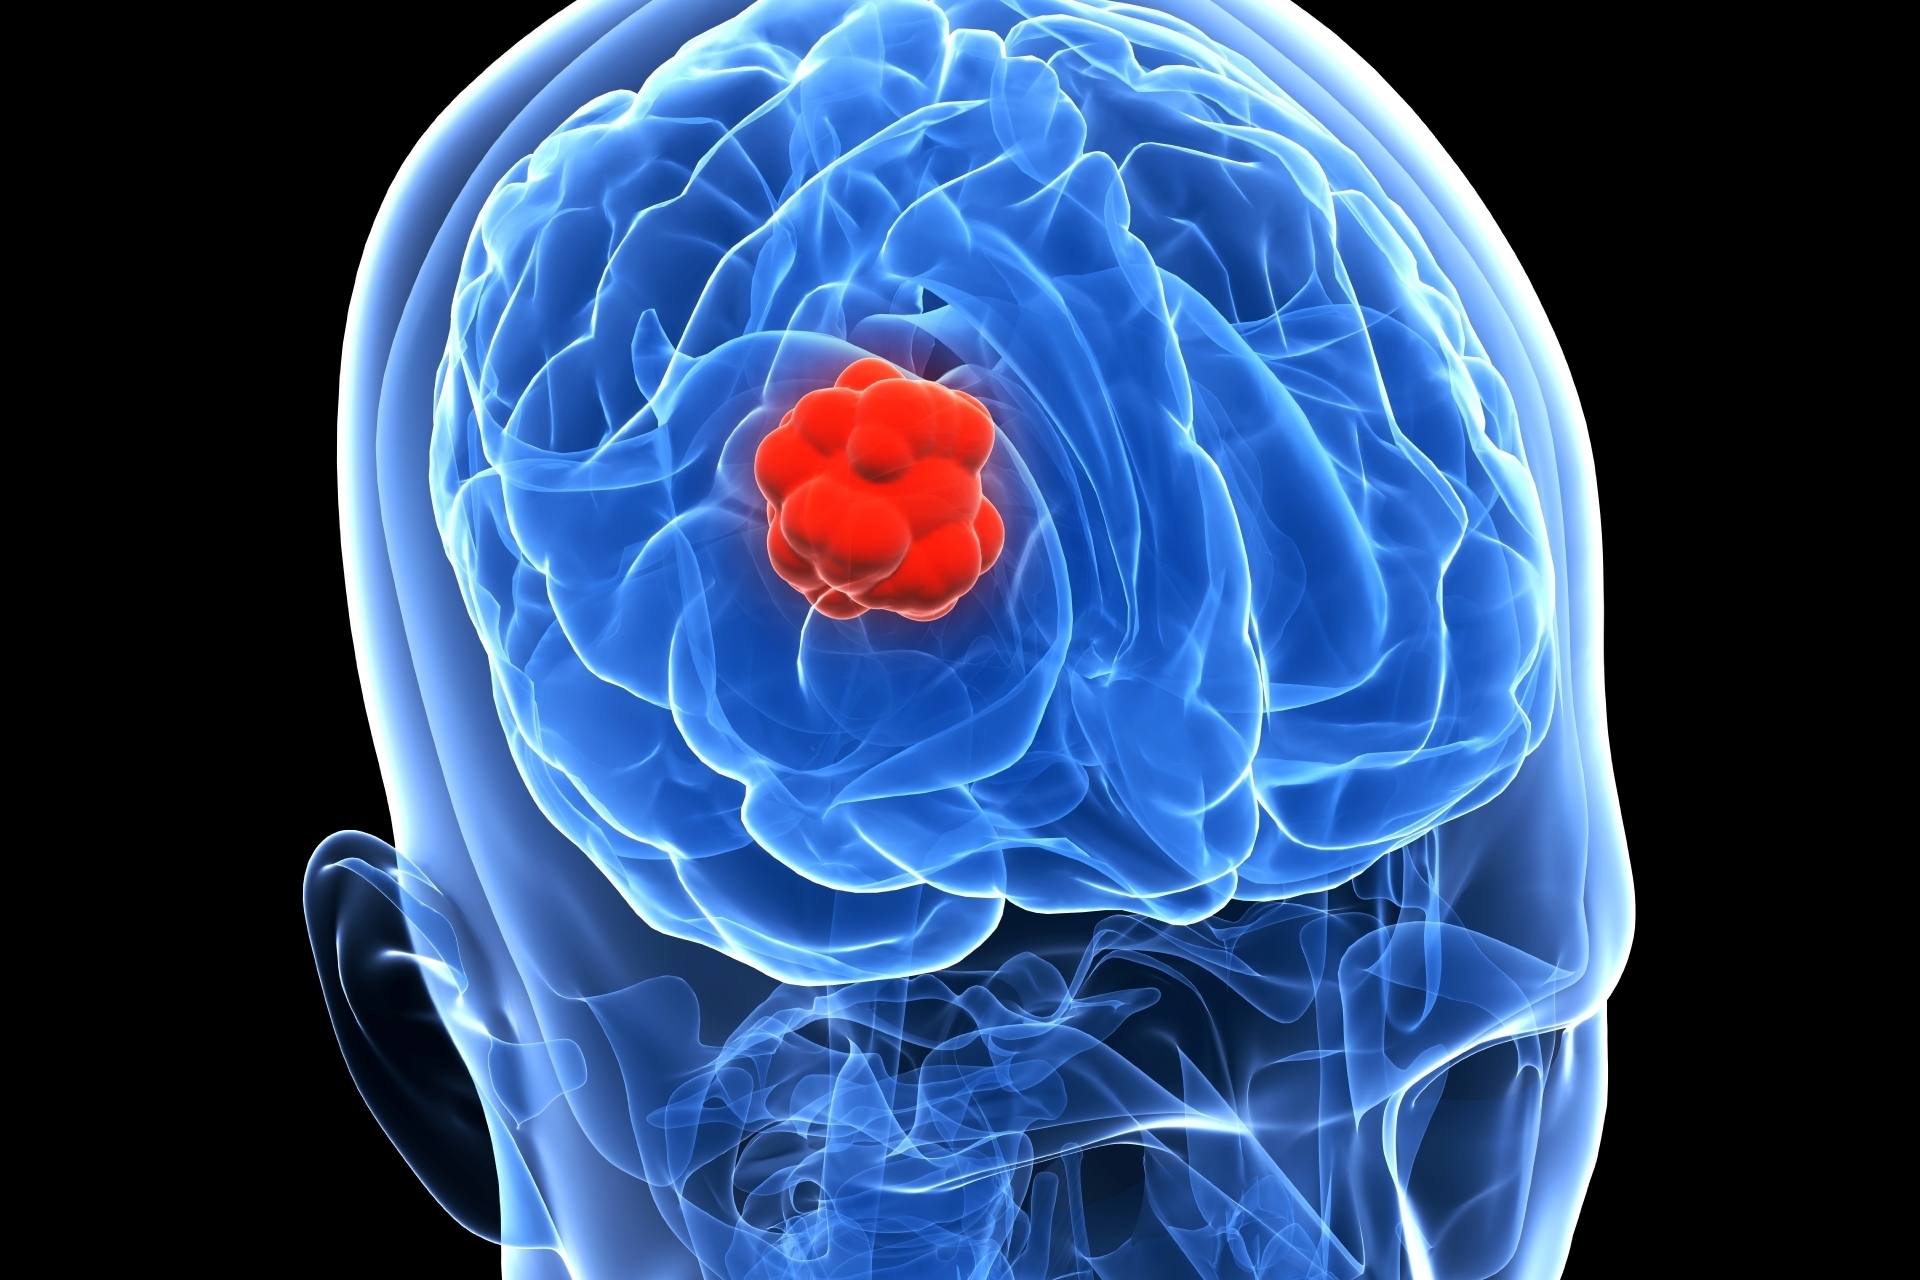 Une tumeur, présente dans le cerveau de la patiente depuis une trentaine d'années, est à l'origine de ces "voix divines".